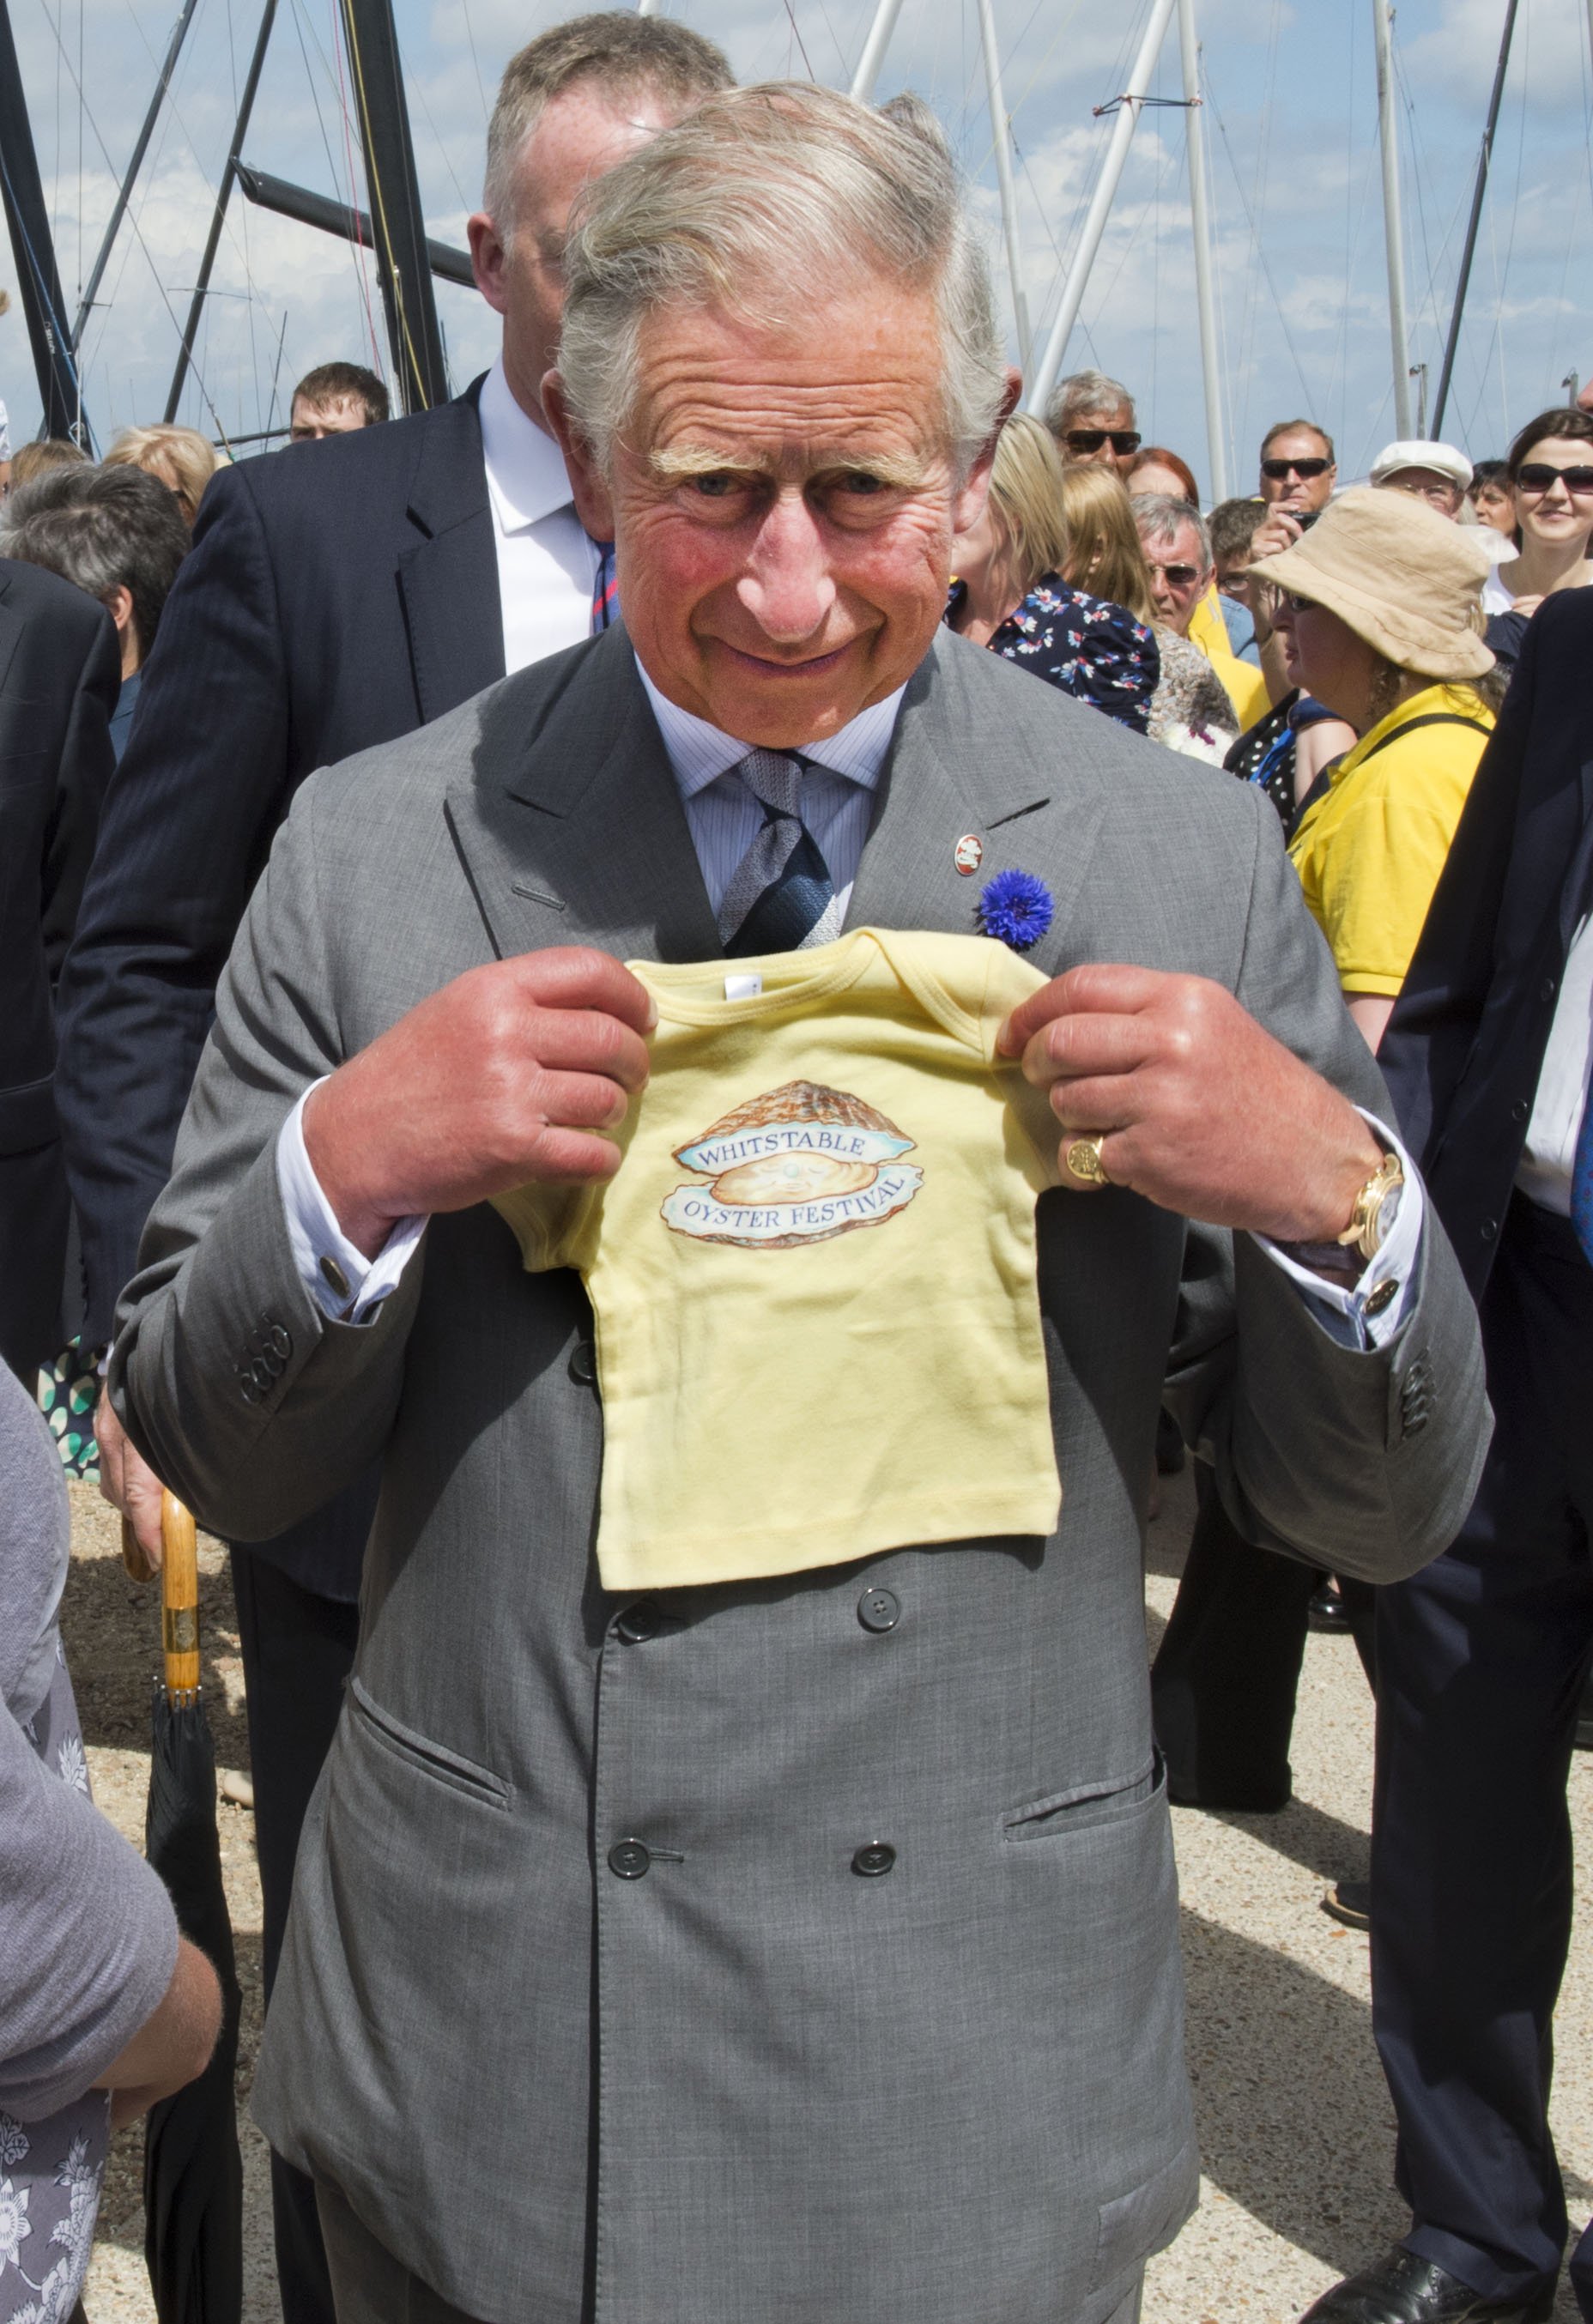 König Charles wird mit einem Geschenk für seinen Enkel Prinz George von Cambridge während eines Besuchs beim Whitstable Oyster Festival am 29. Juli 2013 im Hafen von Whitstable, Whitstable, Kent, gesehen. | Quelle: Getty Images